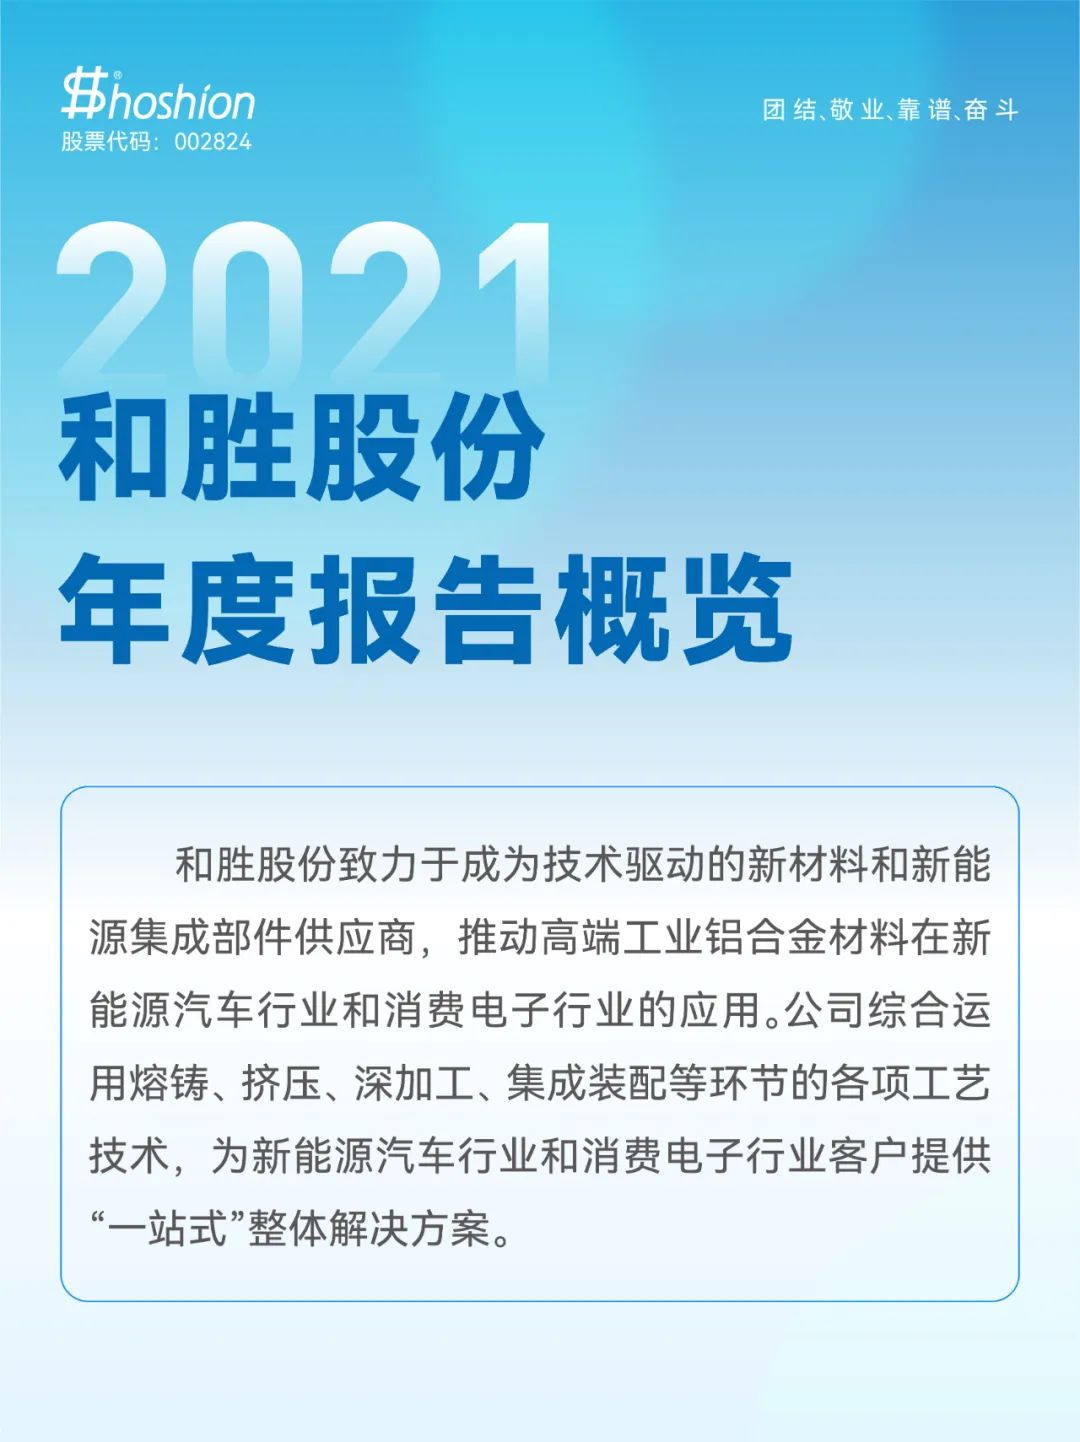 2021和勝股份年度報告概覽